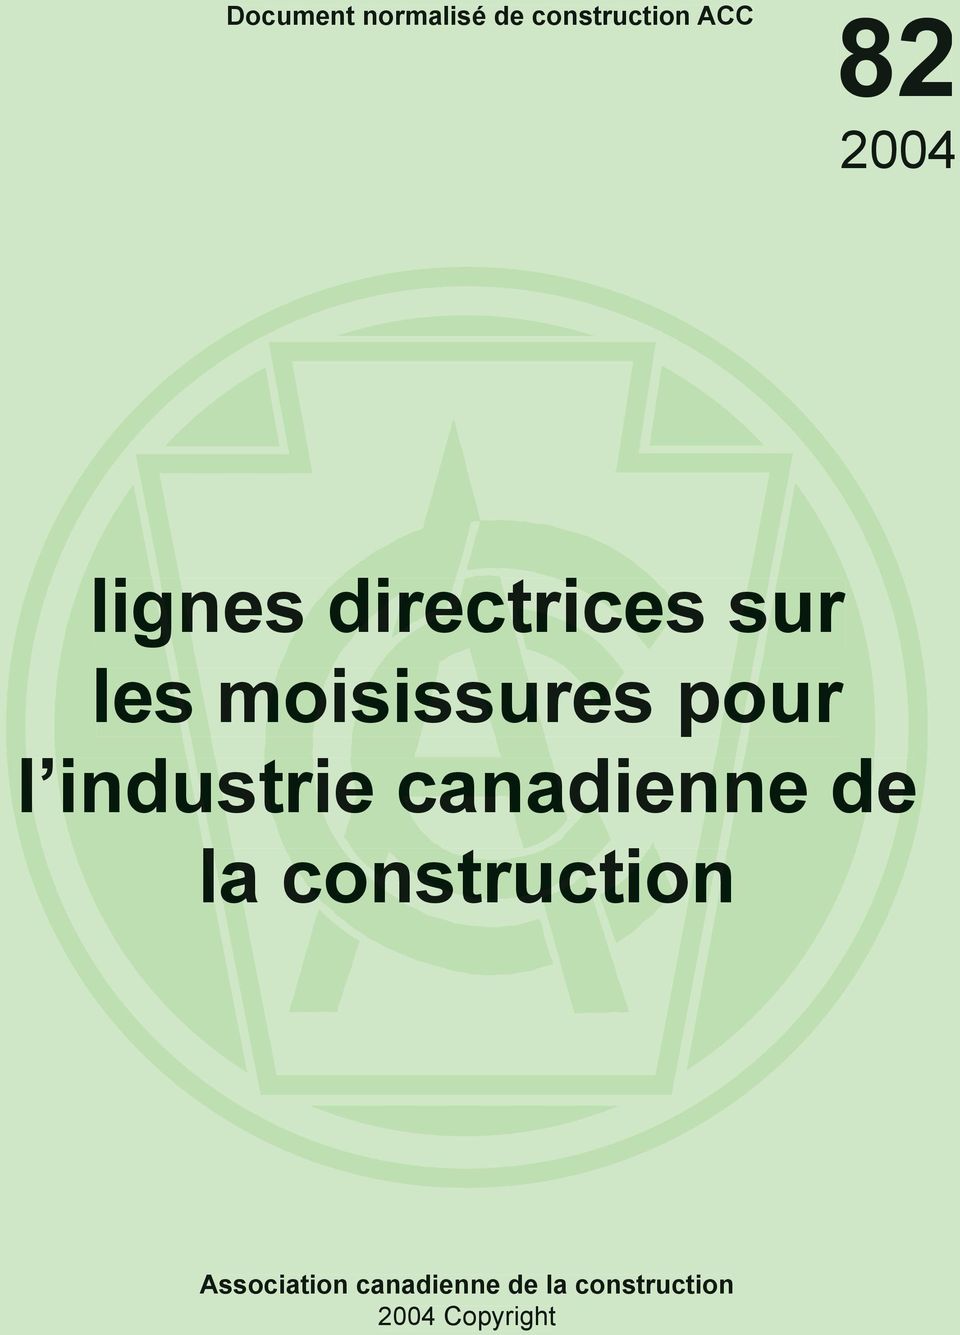 industrie canadienne de a construction